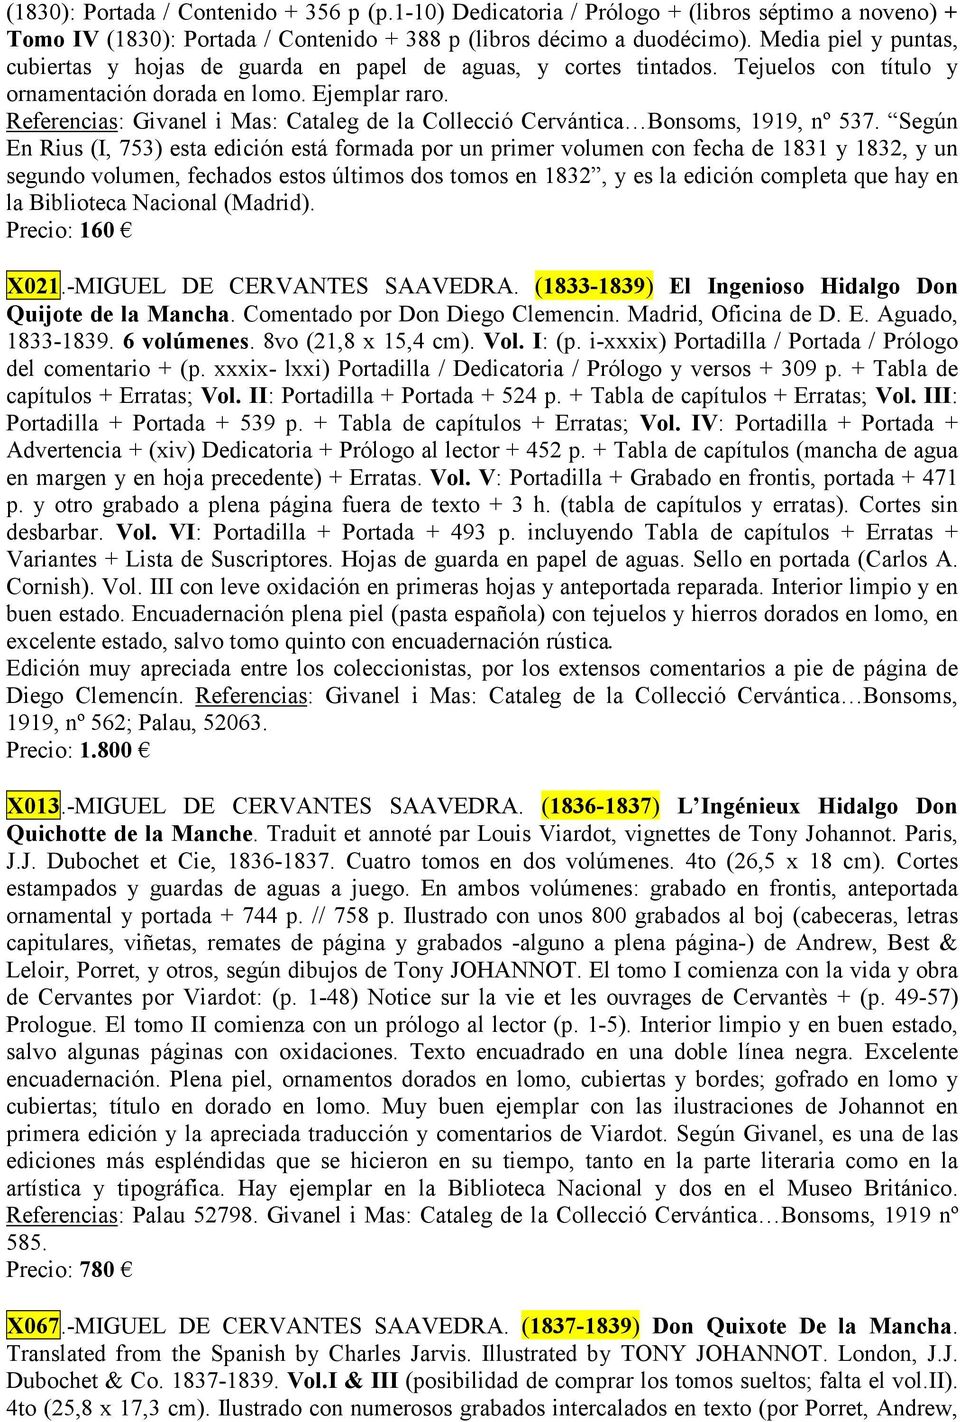 Referencias: Givanel i Mas: Cataleg de la Collecció Cervántica Bonsoms, 1919, nº 537.